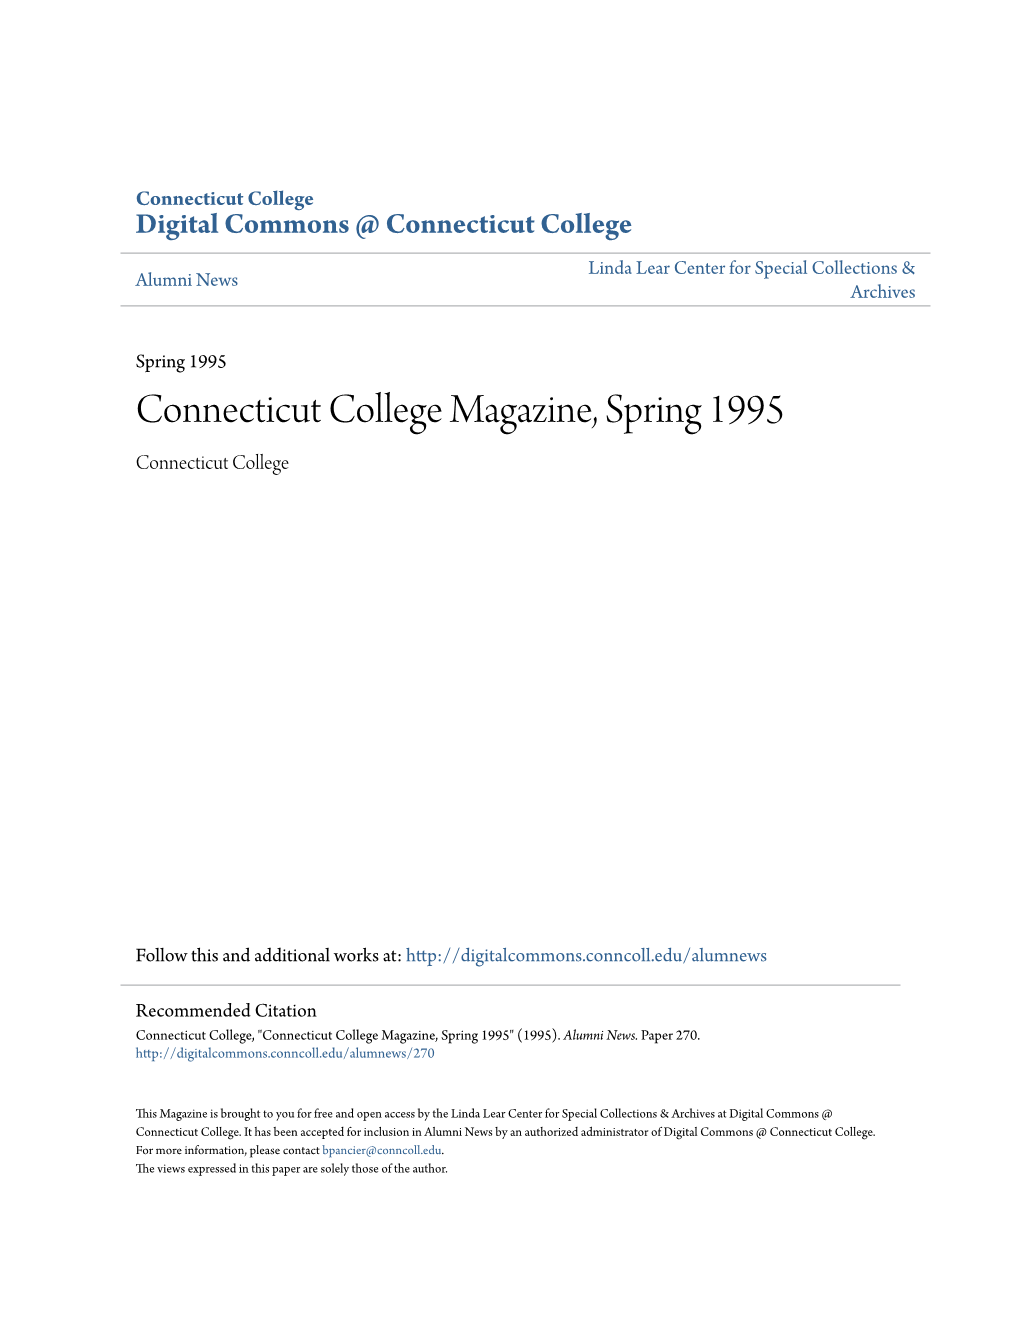 Connecticut College Magazine, Spring 1995 Connecticut College